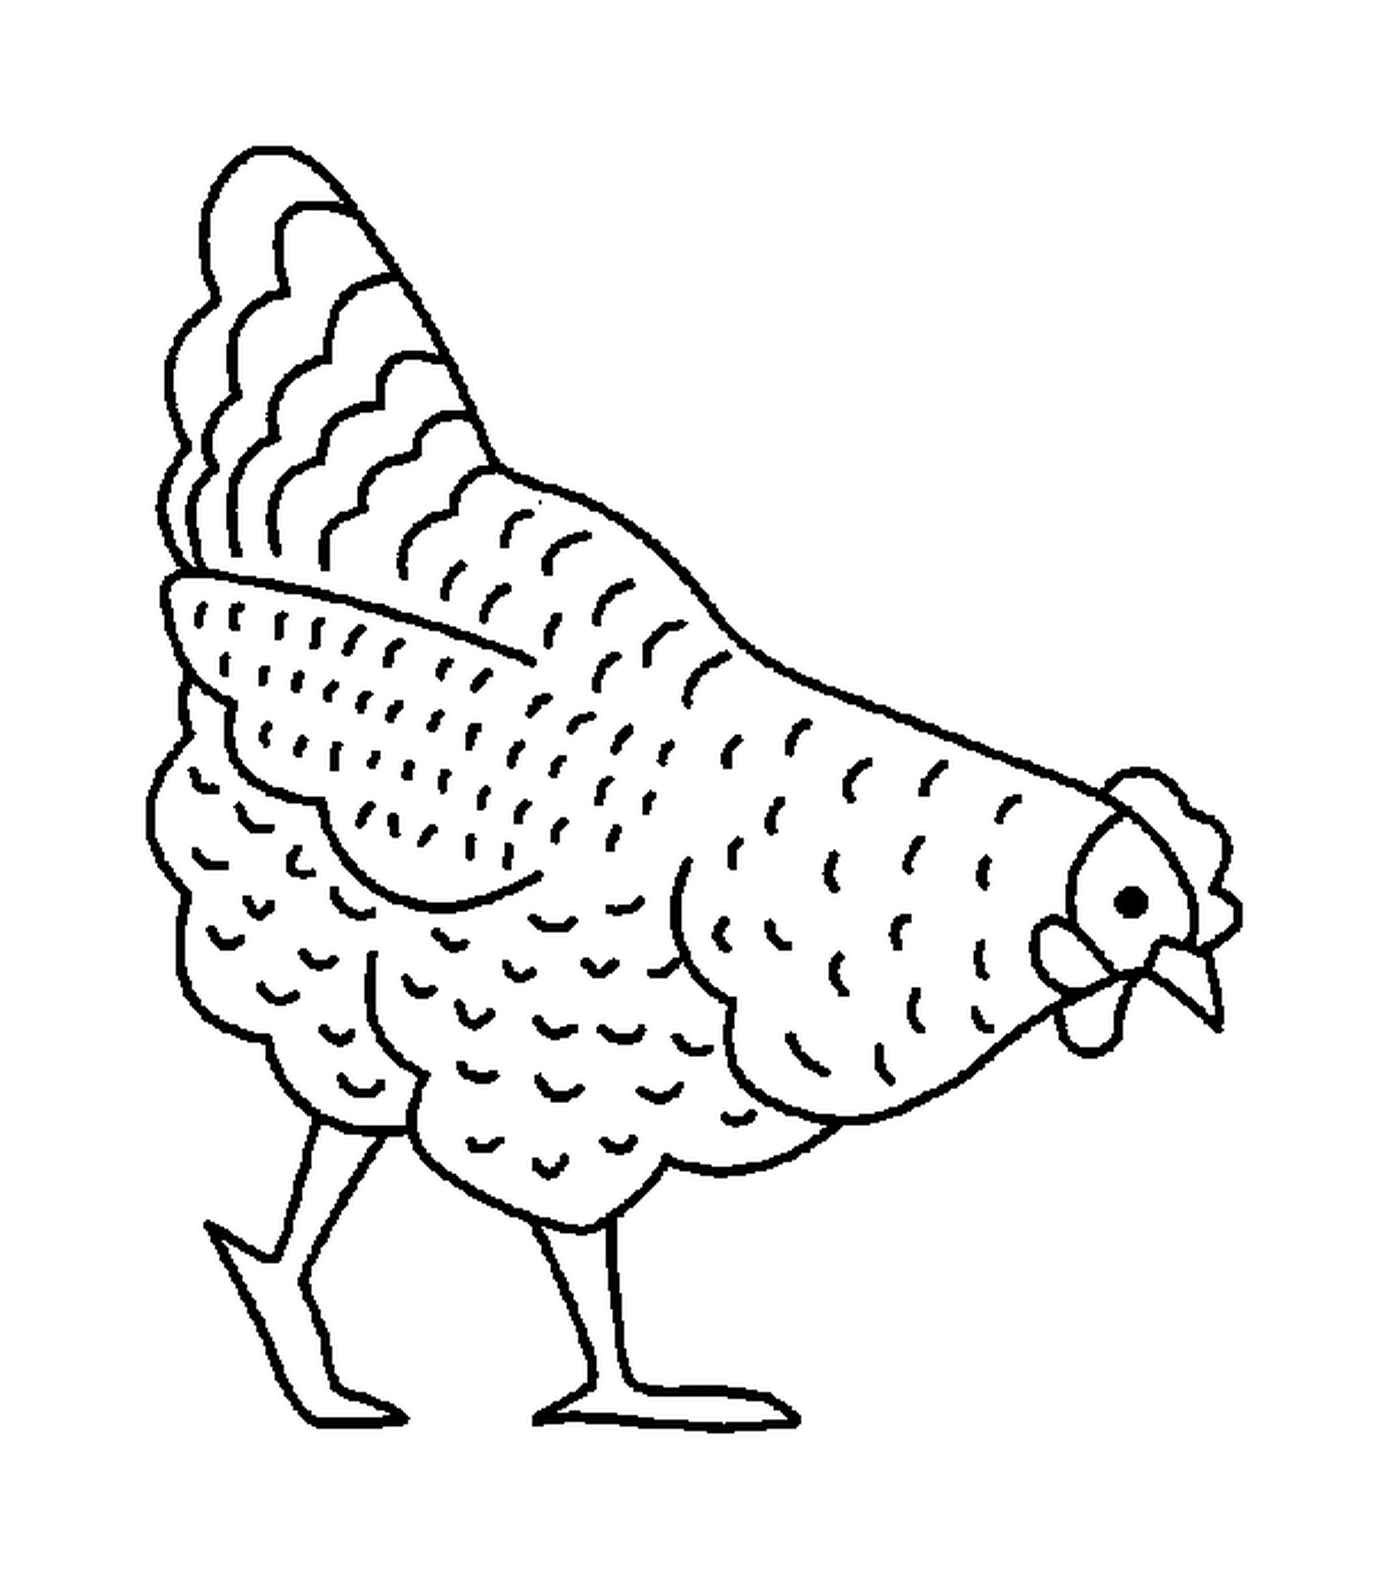  केवल प्रभुत्वशाली मुर्गी ही खड़ा है 